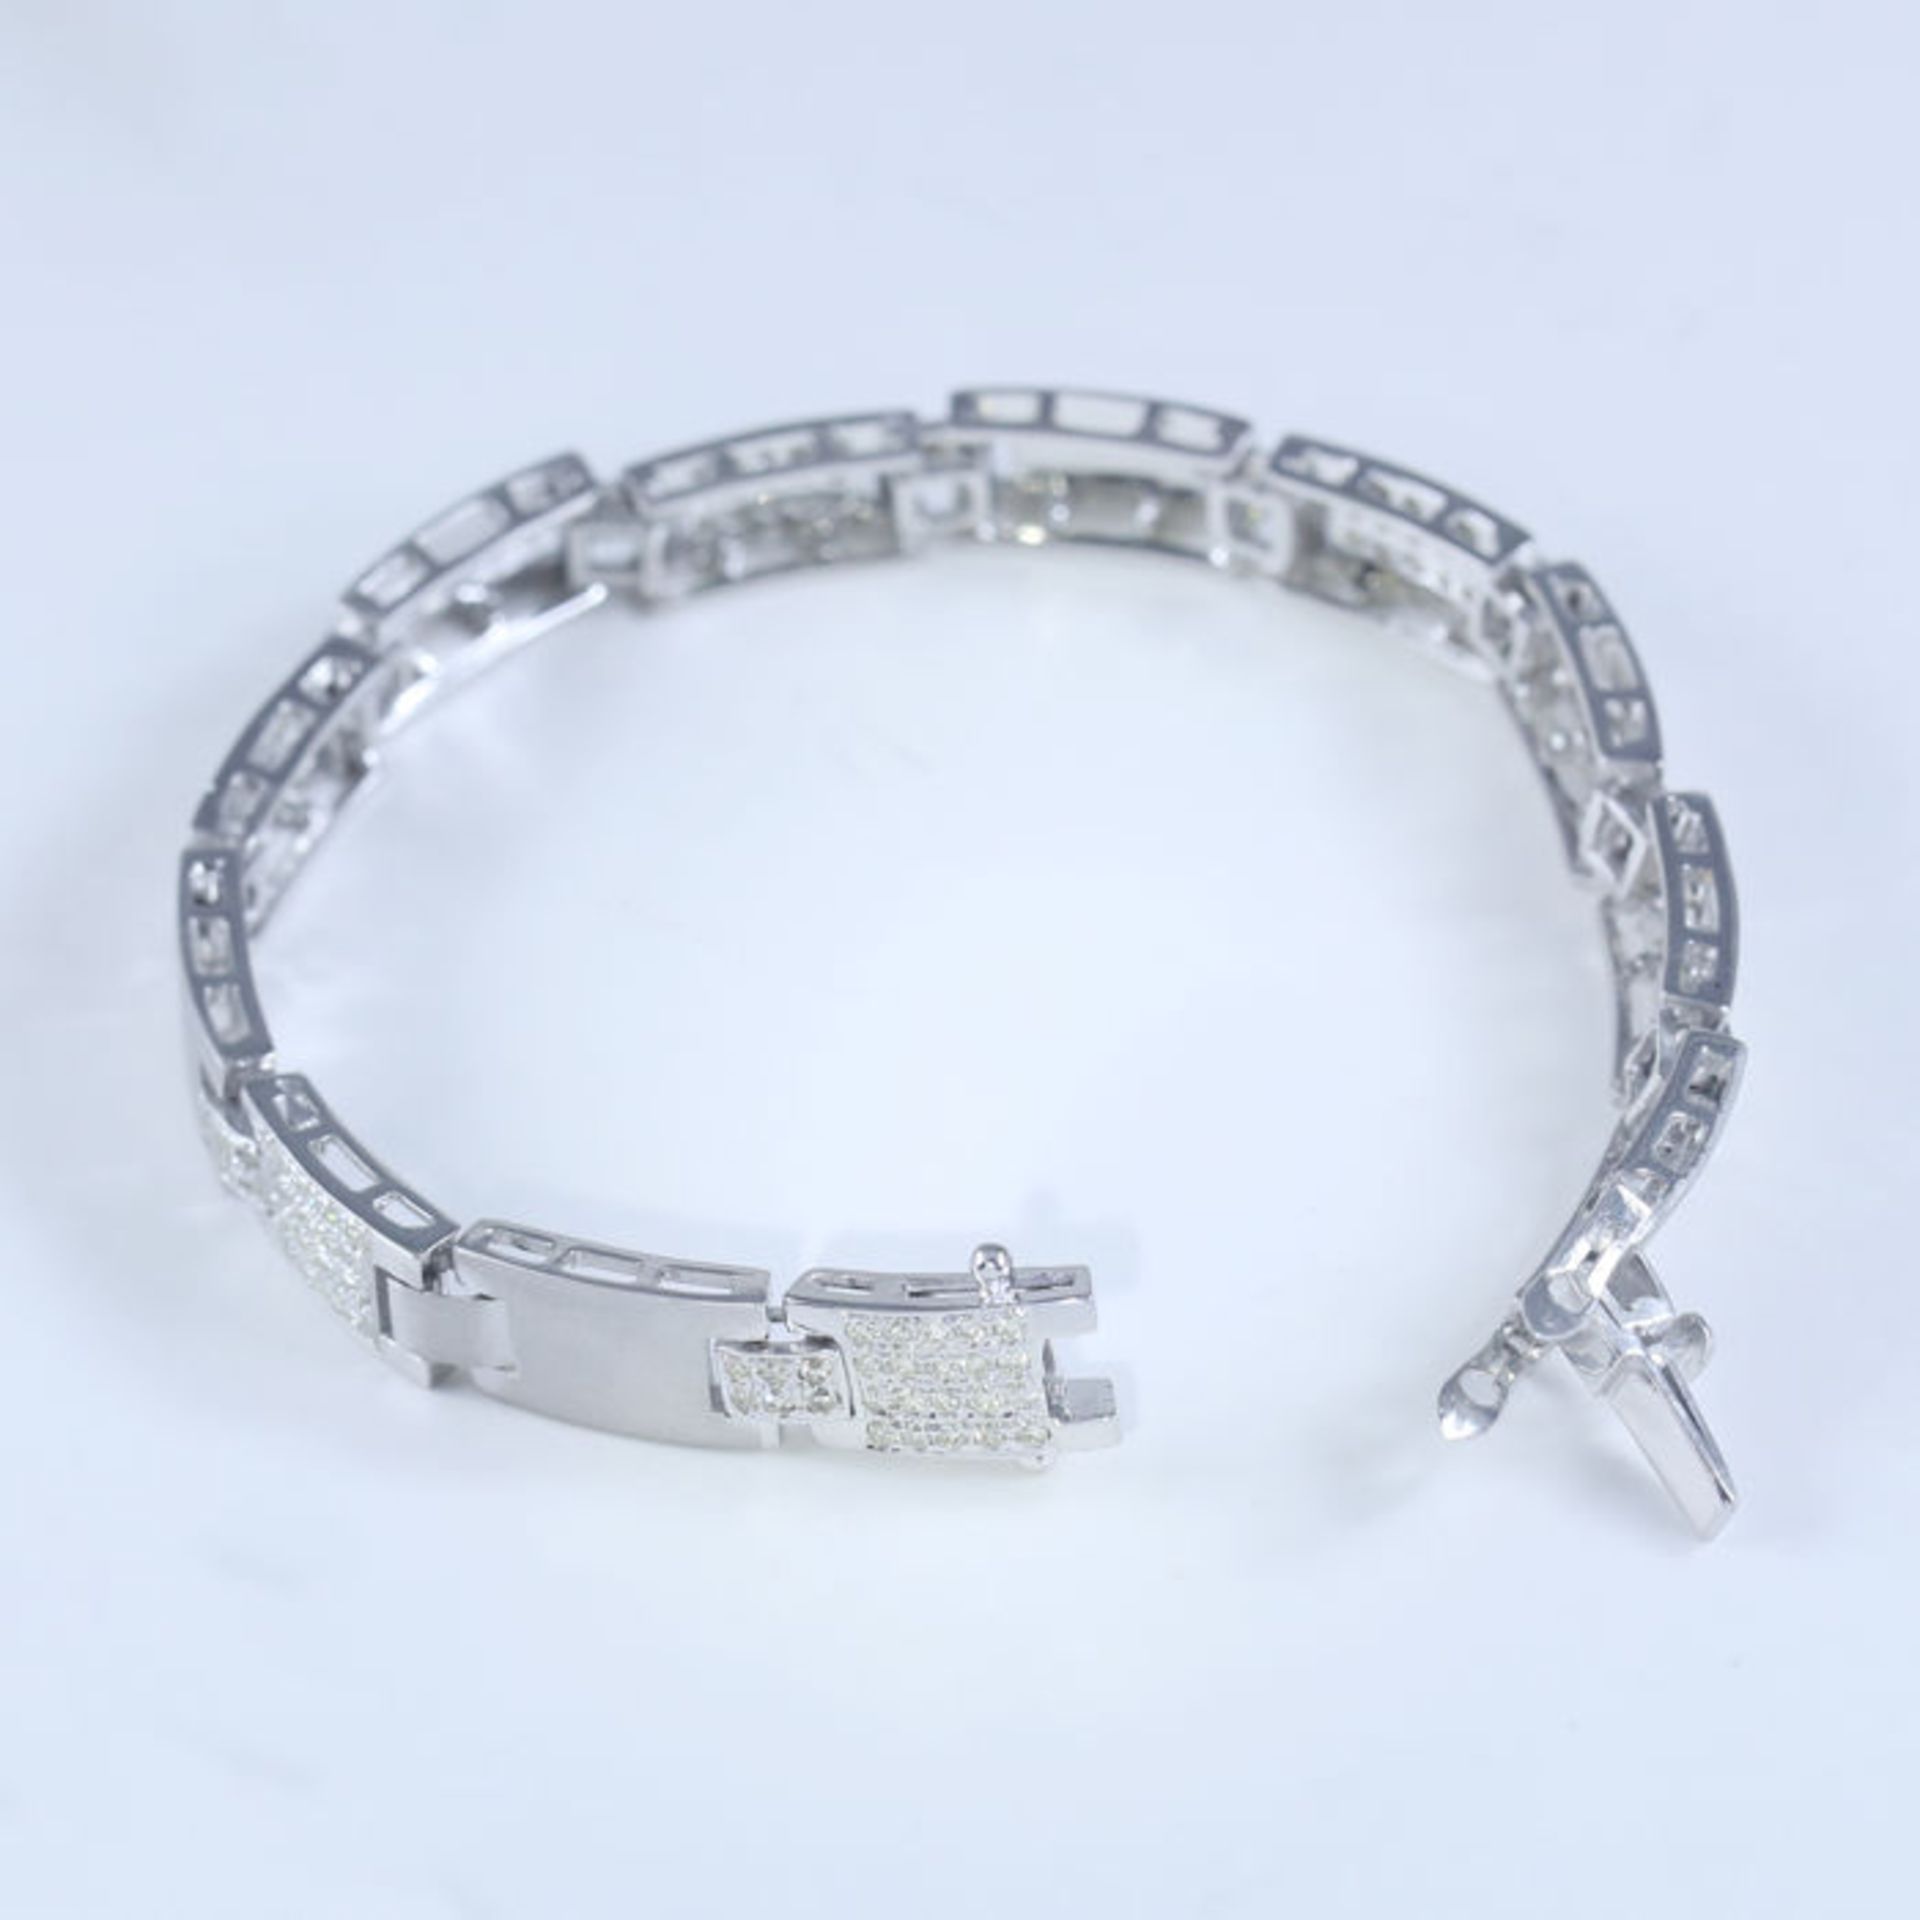 14 K / 585 White Gold Men's Diamond Bracelet - Image 4 of 7